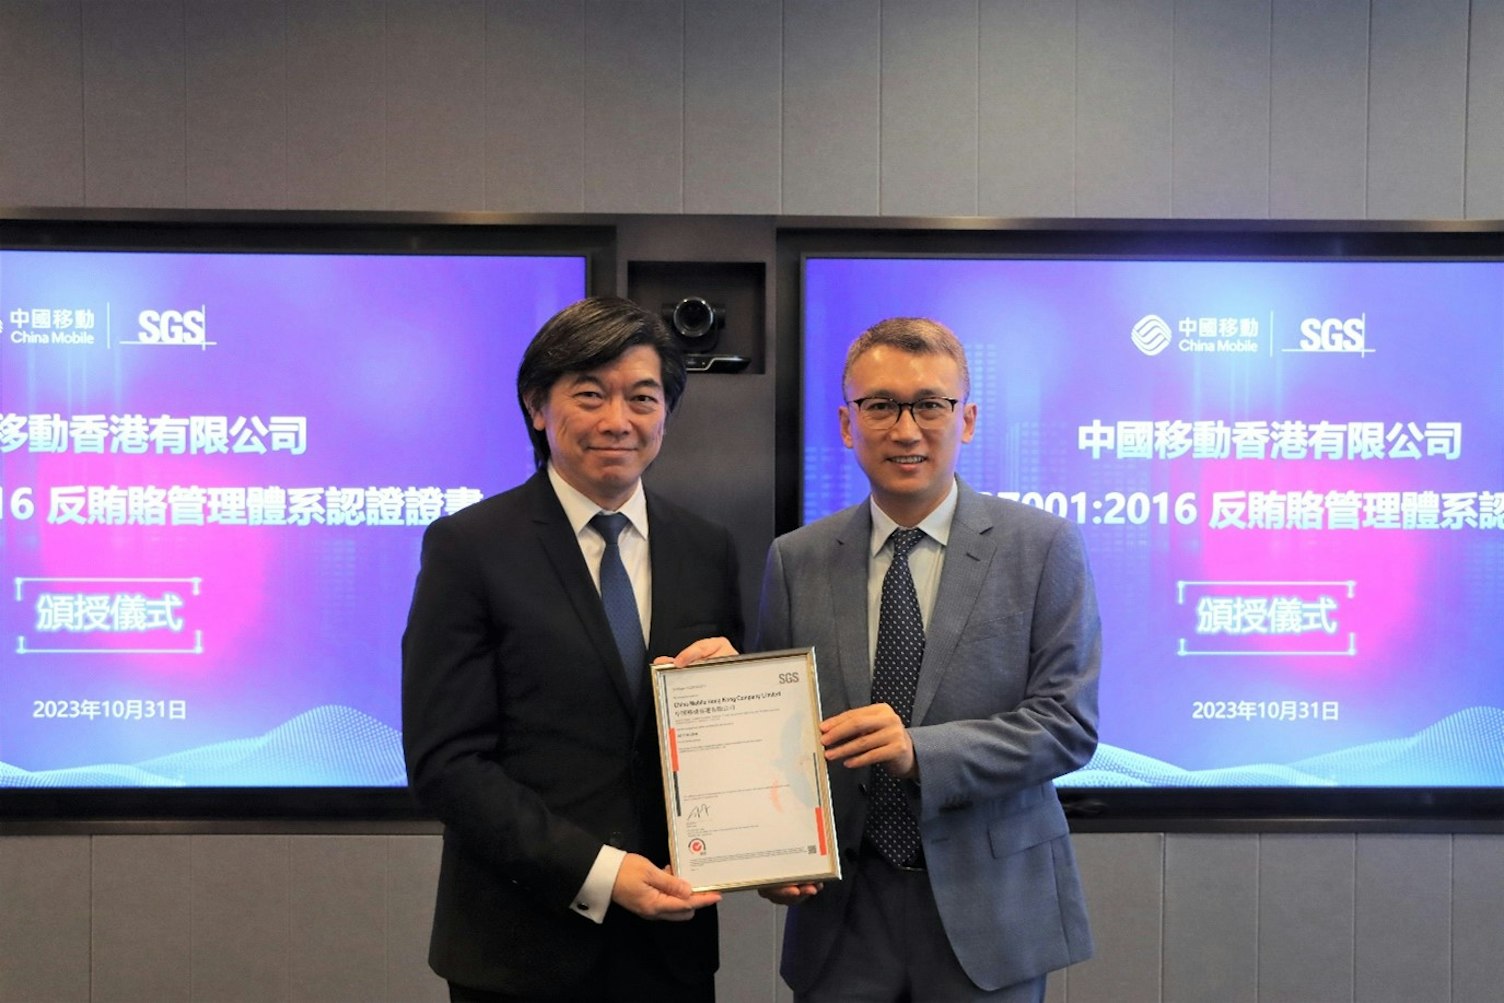 SGS China and Hong Kong telecommunications operators